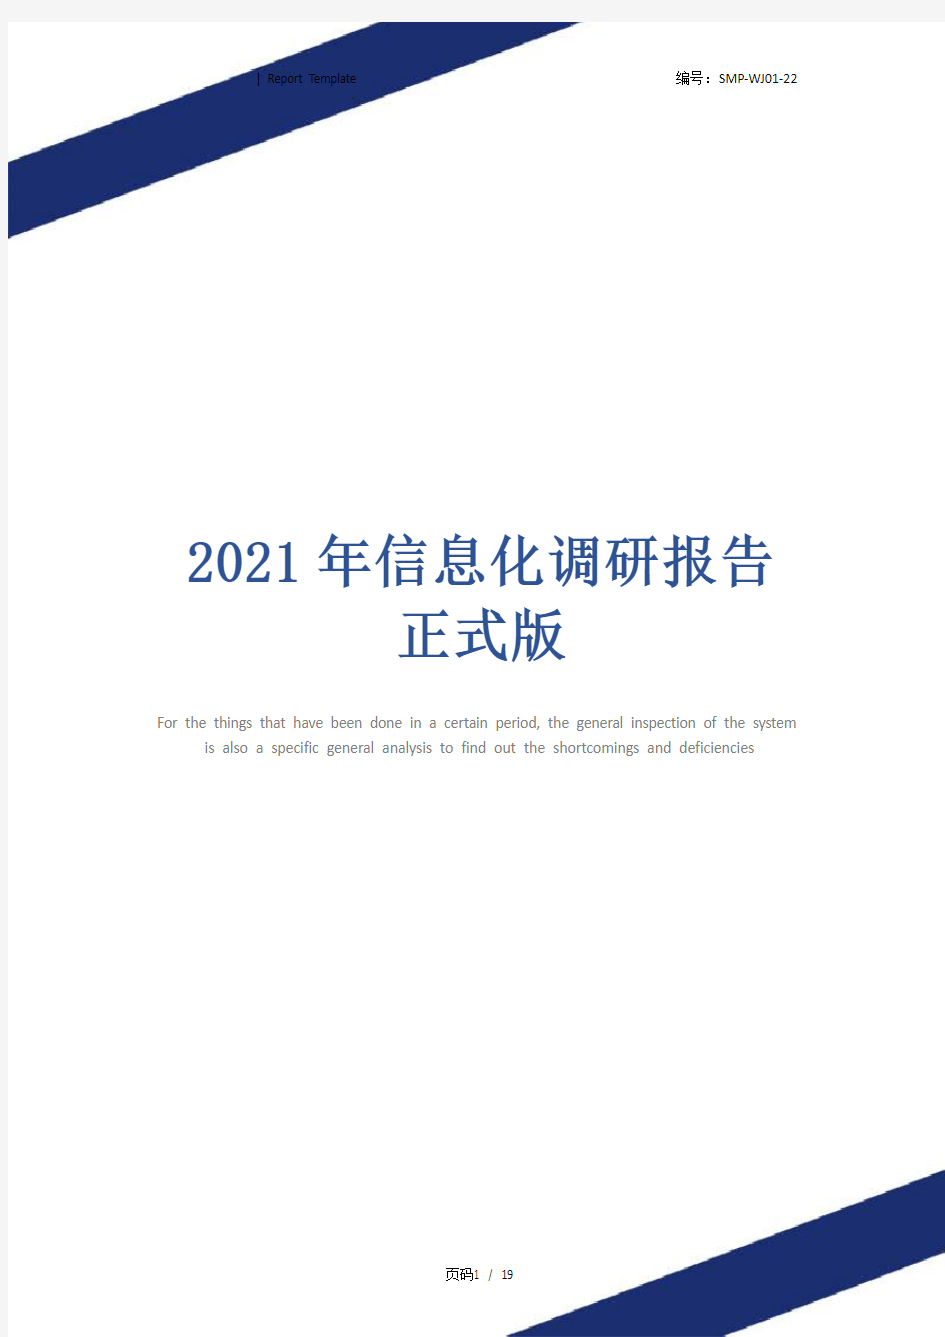 2021年信息化调研报告正式版